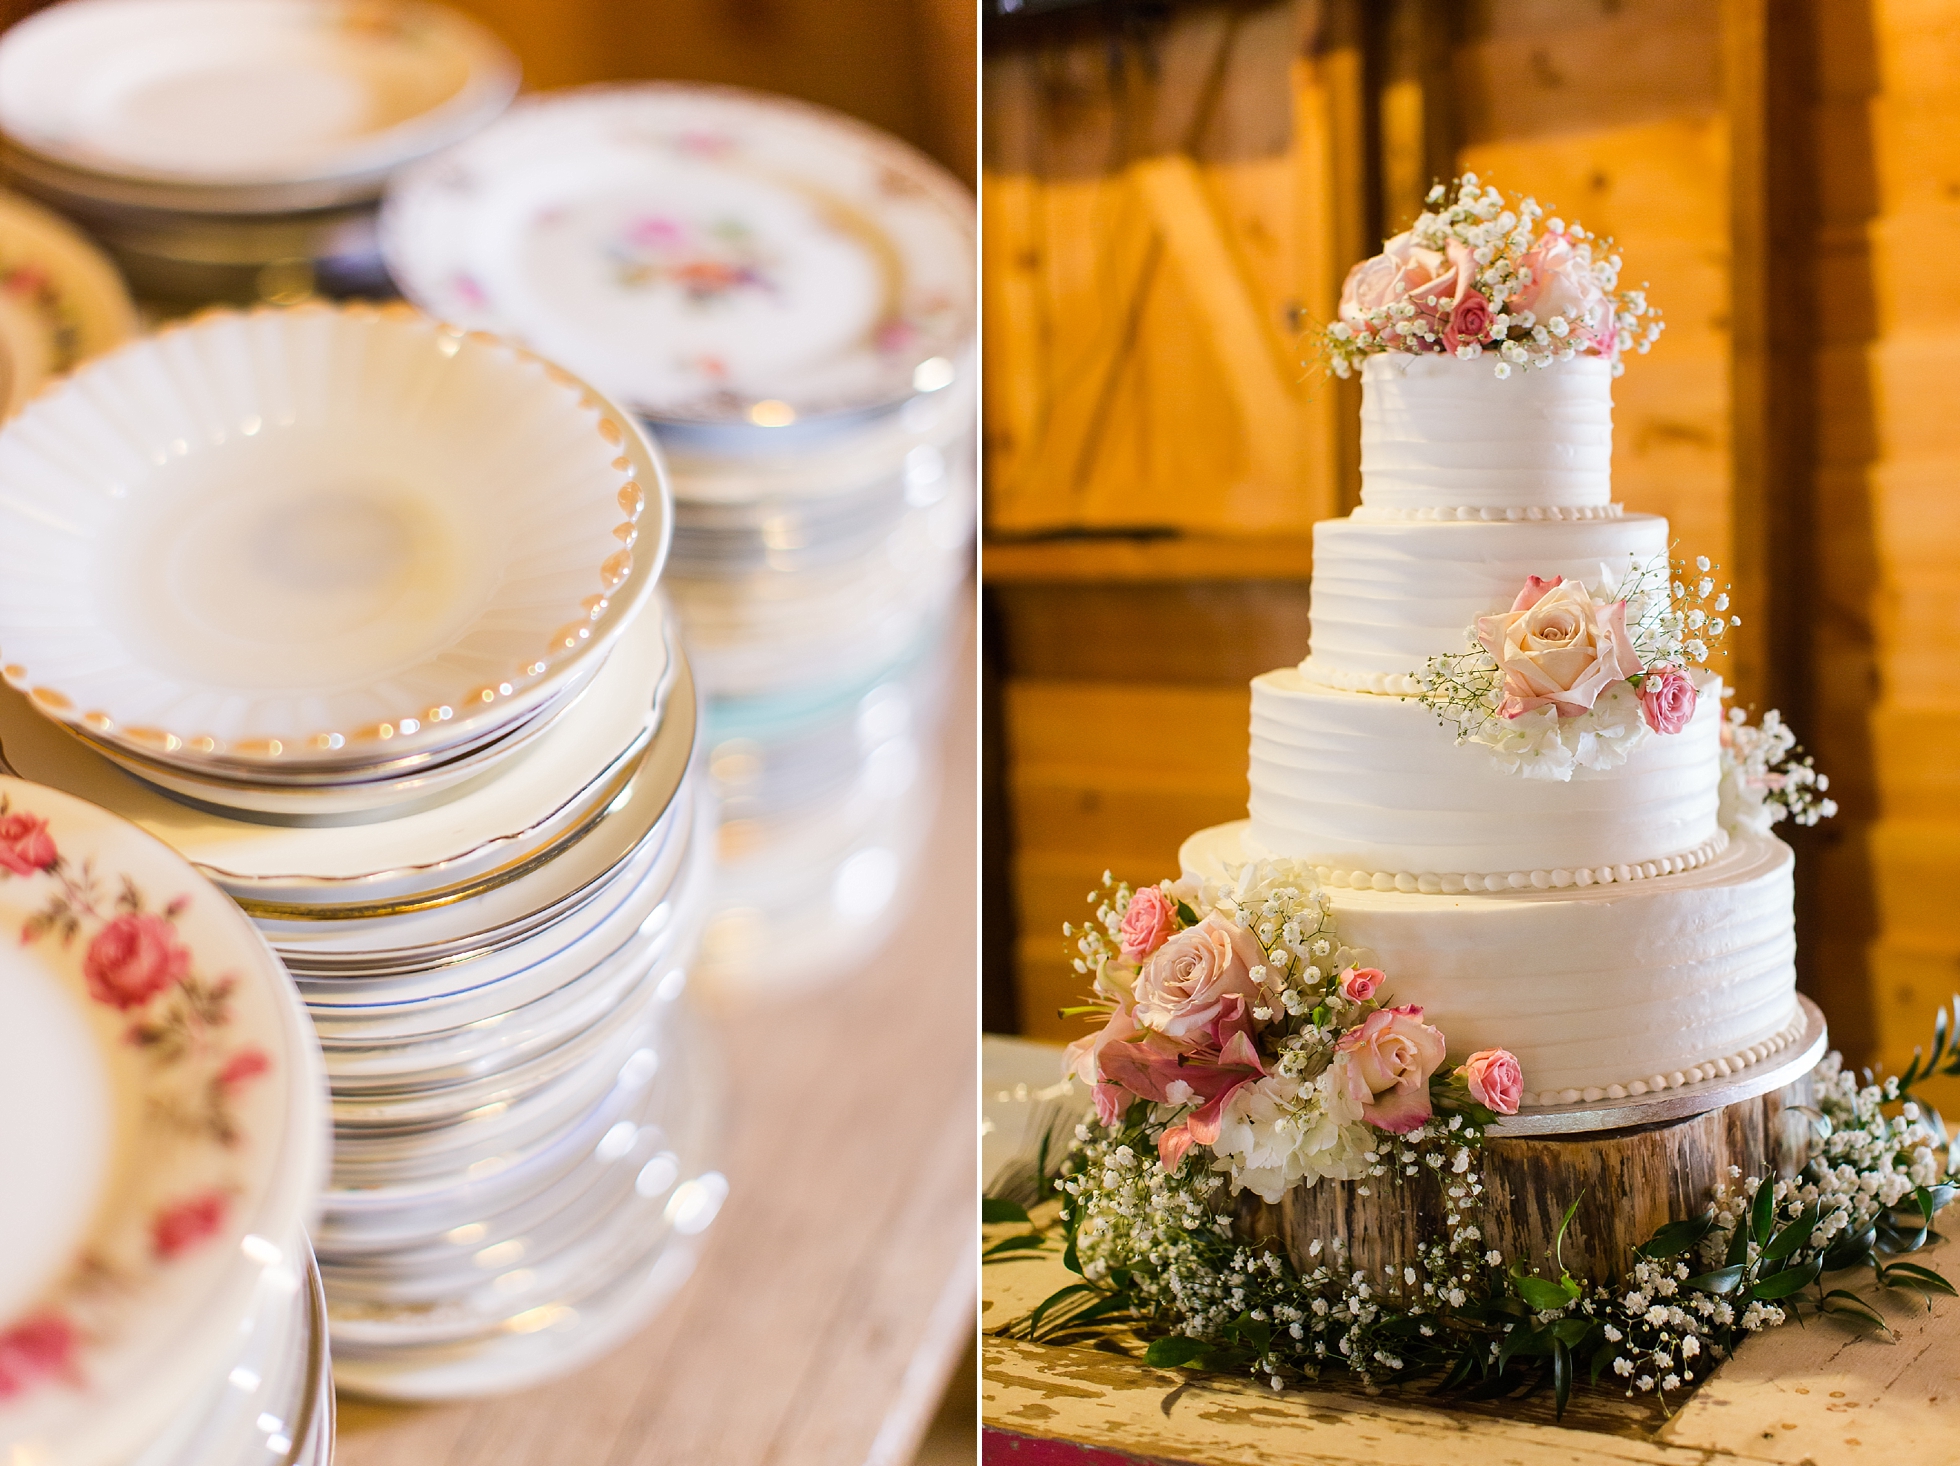 cake vintage china plates wedding